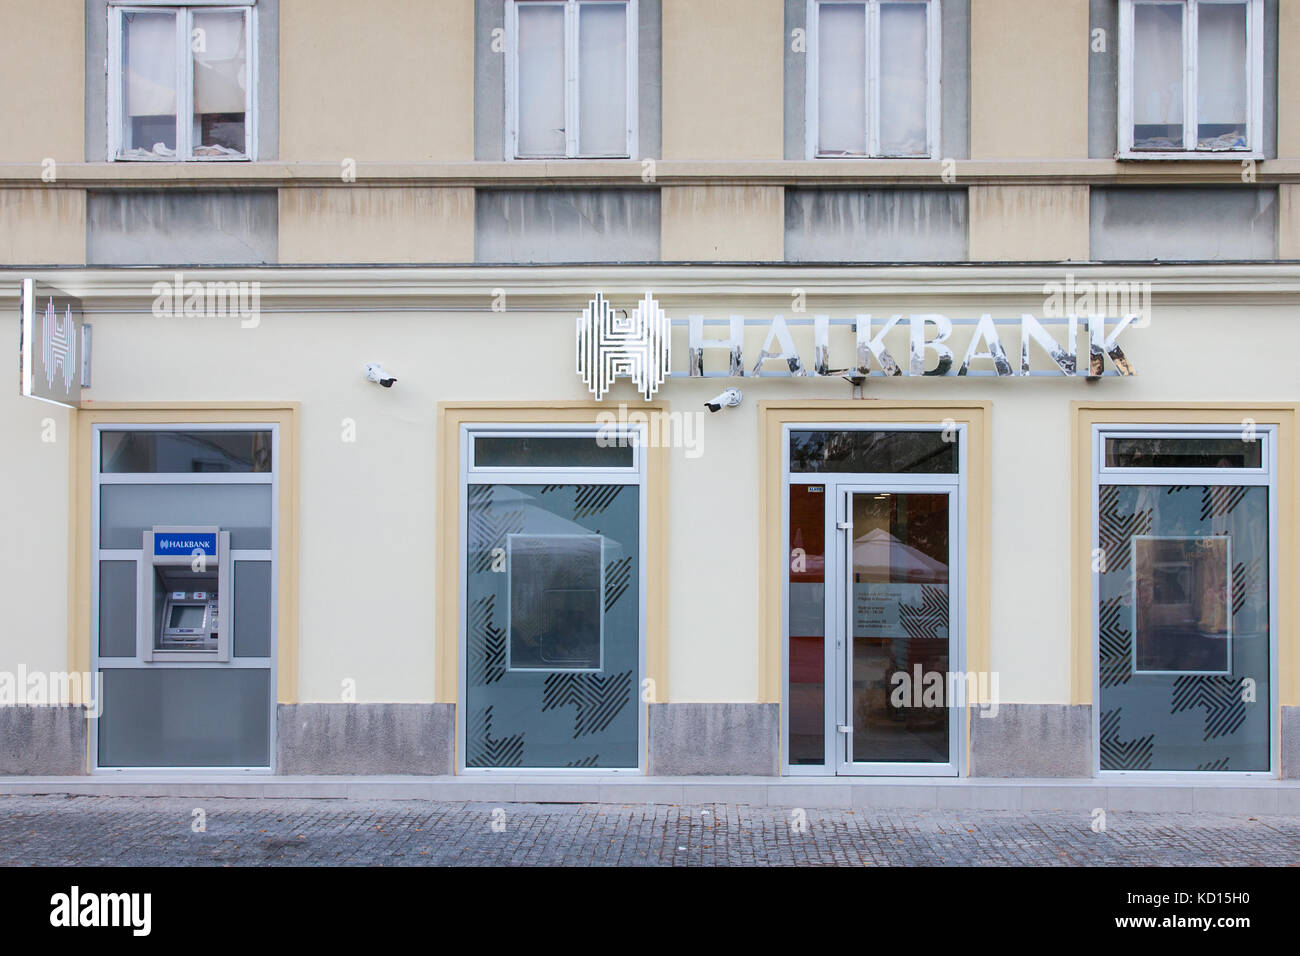 Belgrado, Serbia - Septiembre 3, 2017: la sucursal local del banco turco halkbank, que empezó a abrir oficinas en serbia imagen de la recientemente abierta Foto de stock